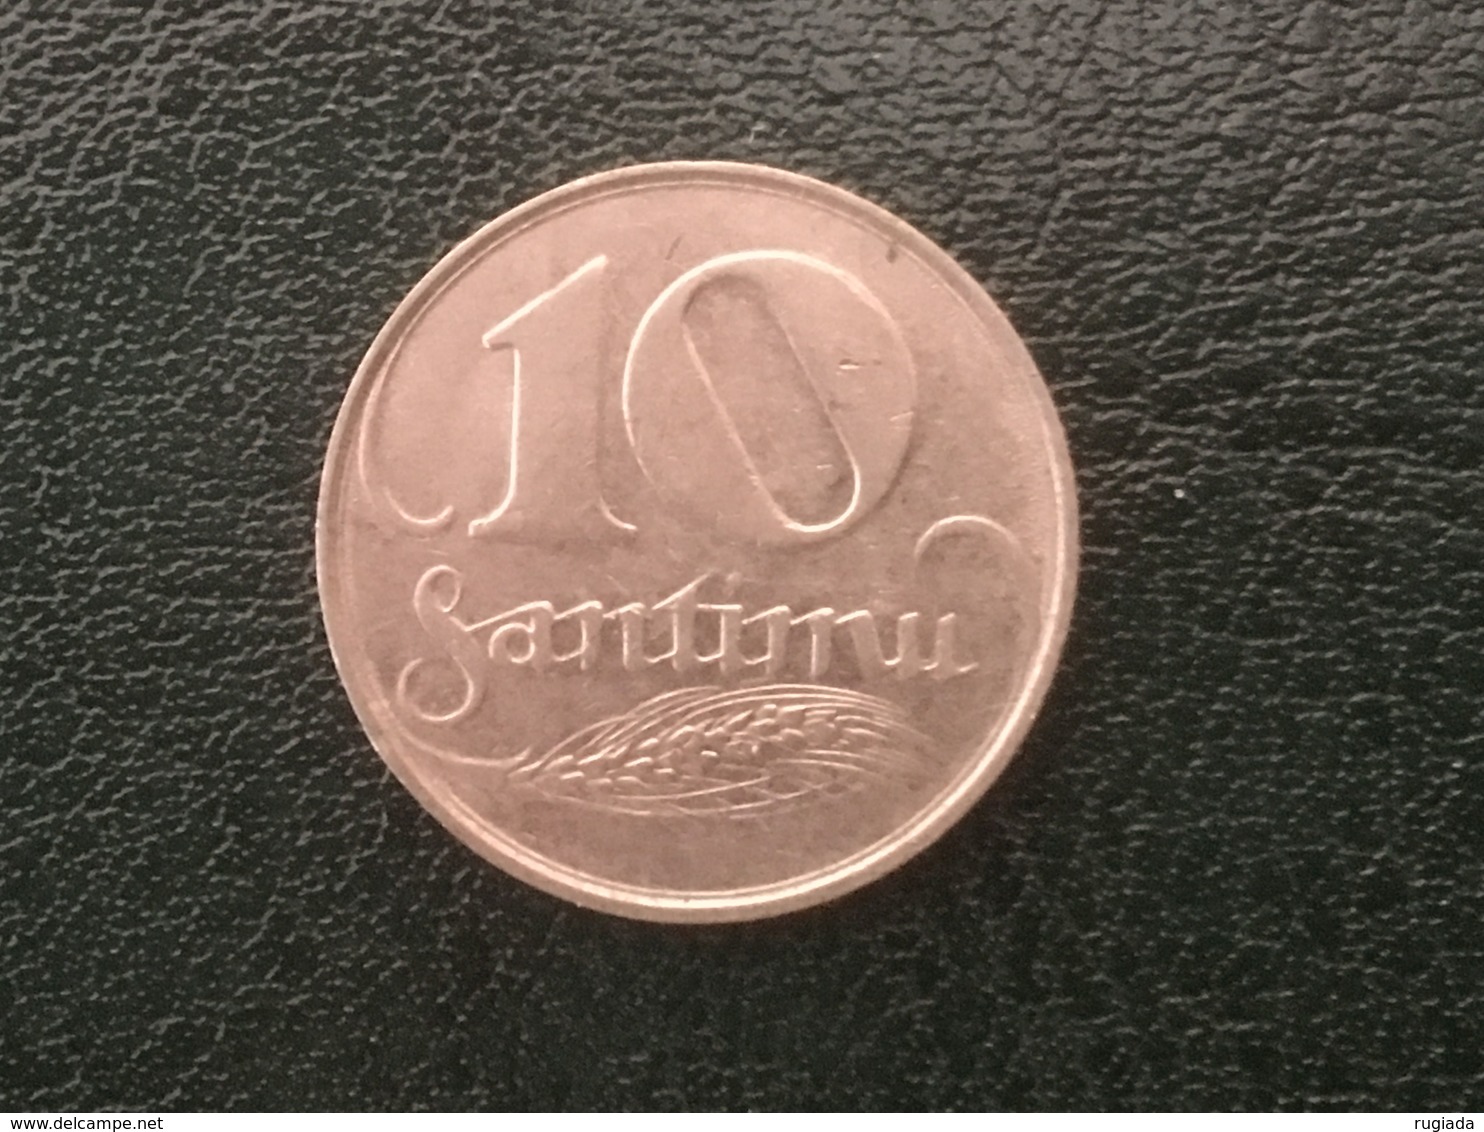 1922 Latvia 10 Santimu Coin - VF Very Fine - Latvia